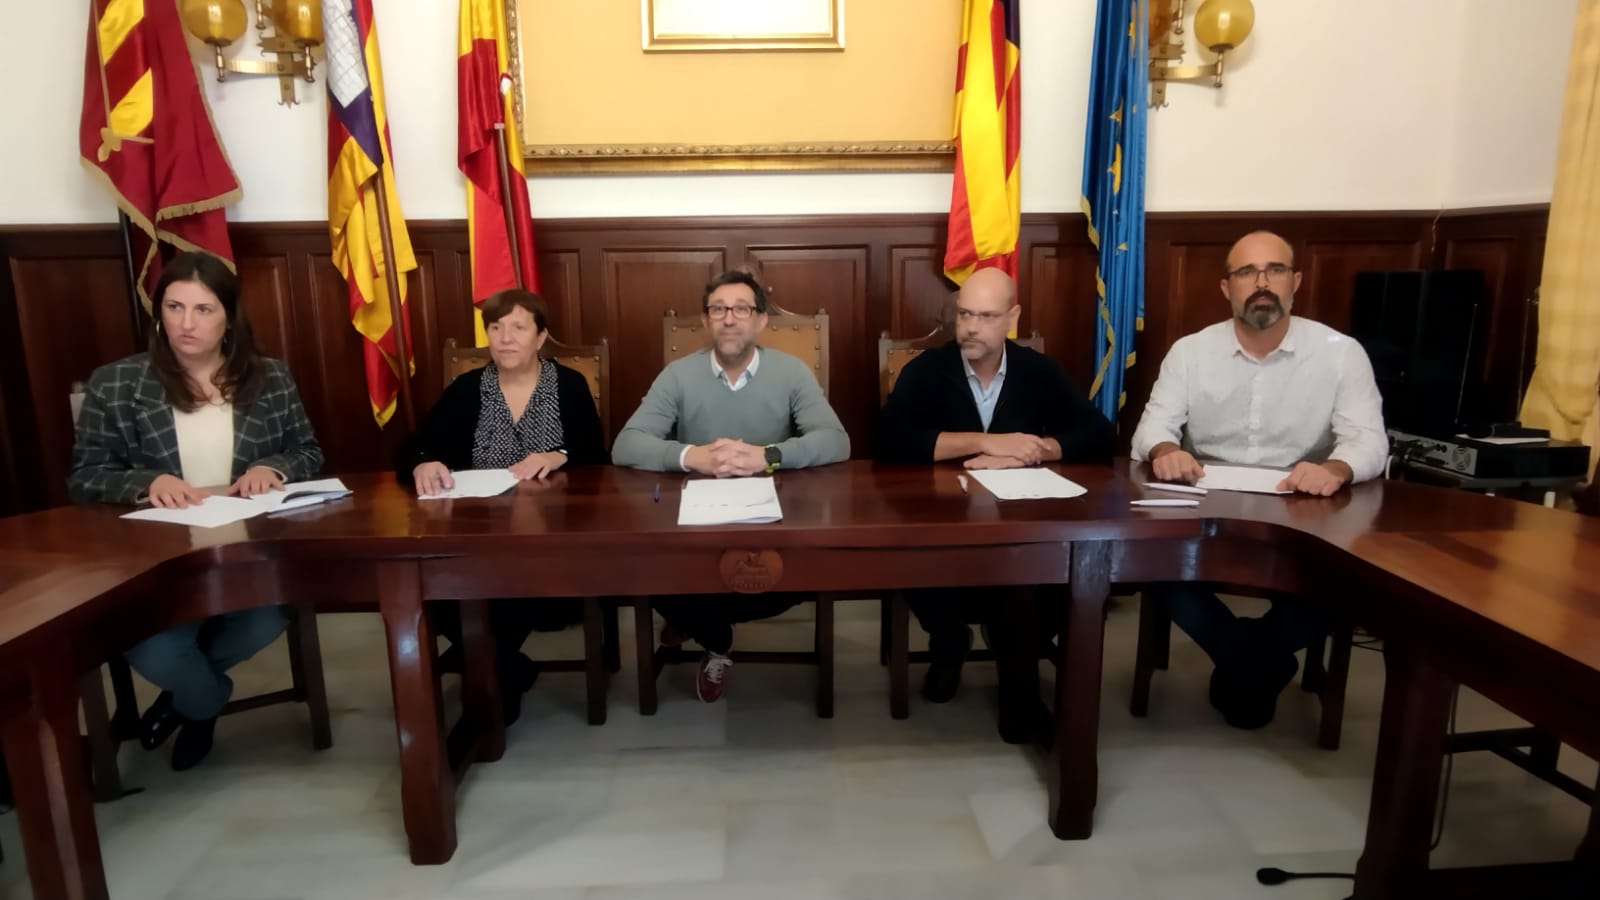 Acord per conduir aigua potable fins a Felanitx, Santanyí, Campos i Ses Salines